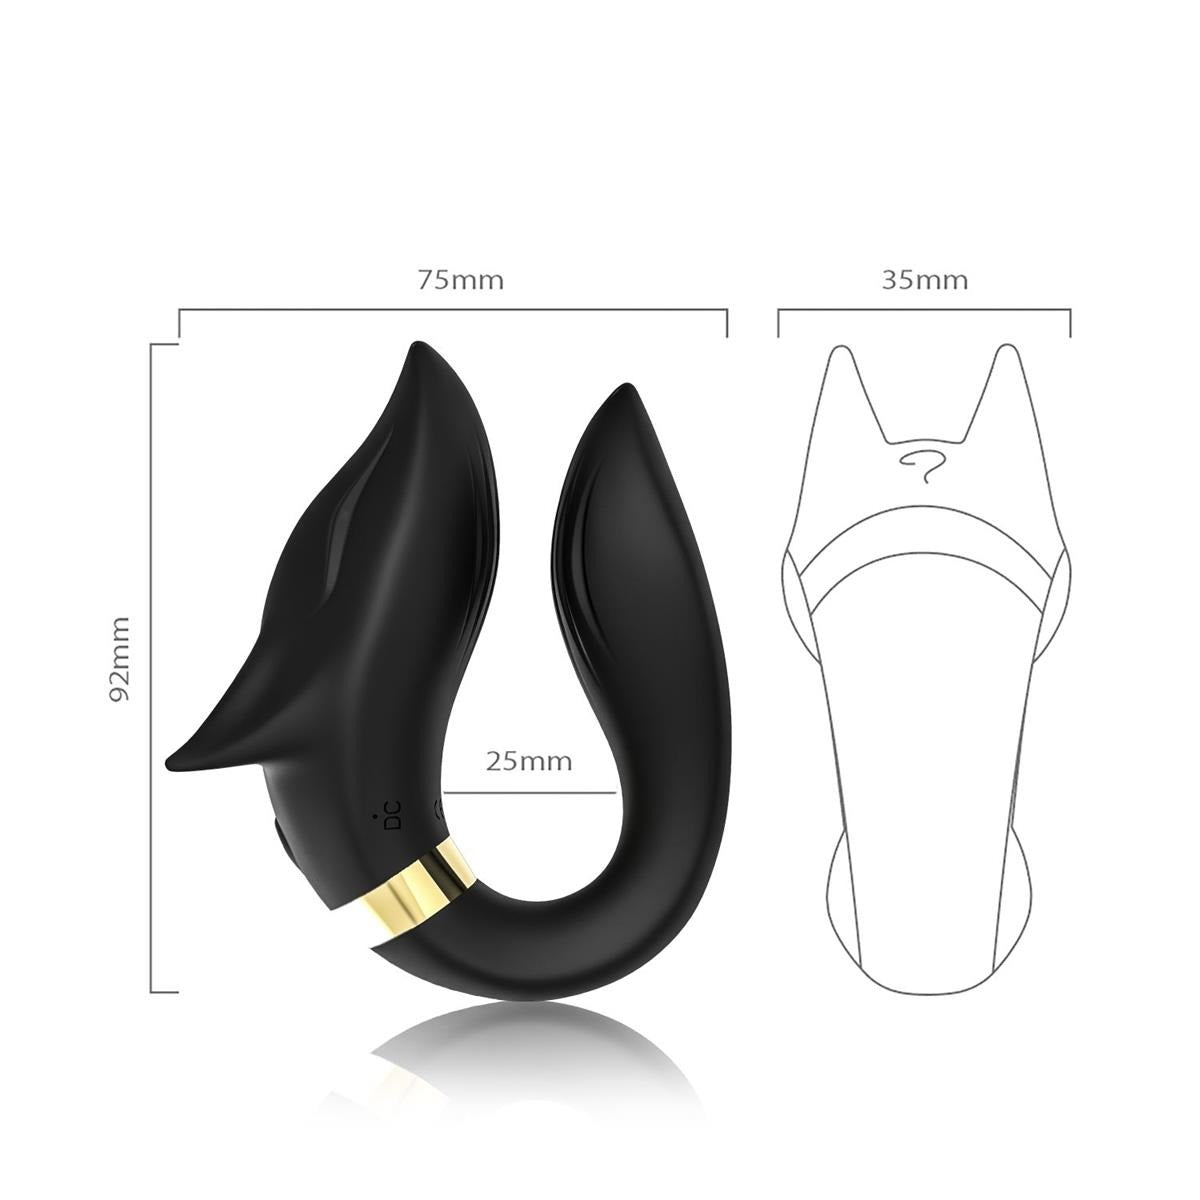 Fox Black - USB - 9 Vibratiestanden - Luxe Geschenkdoos - Zwart